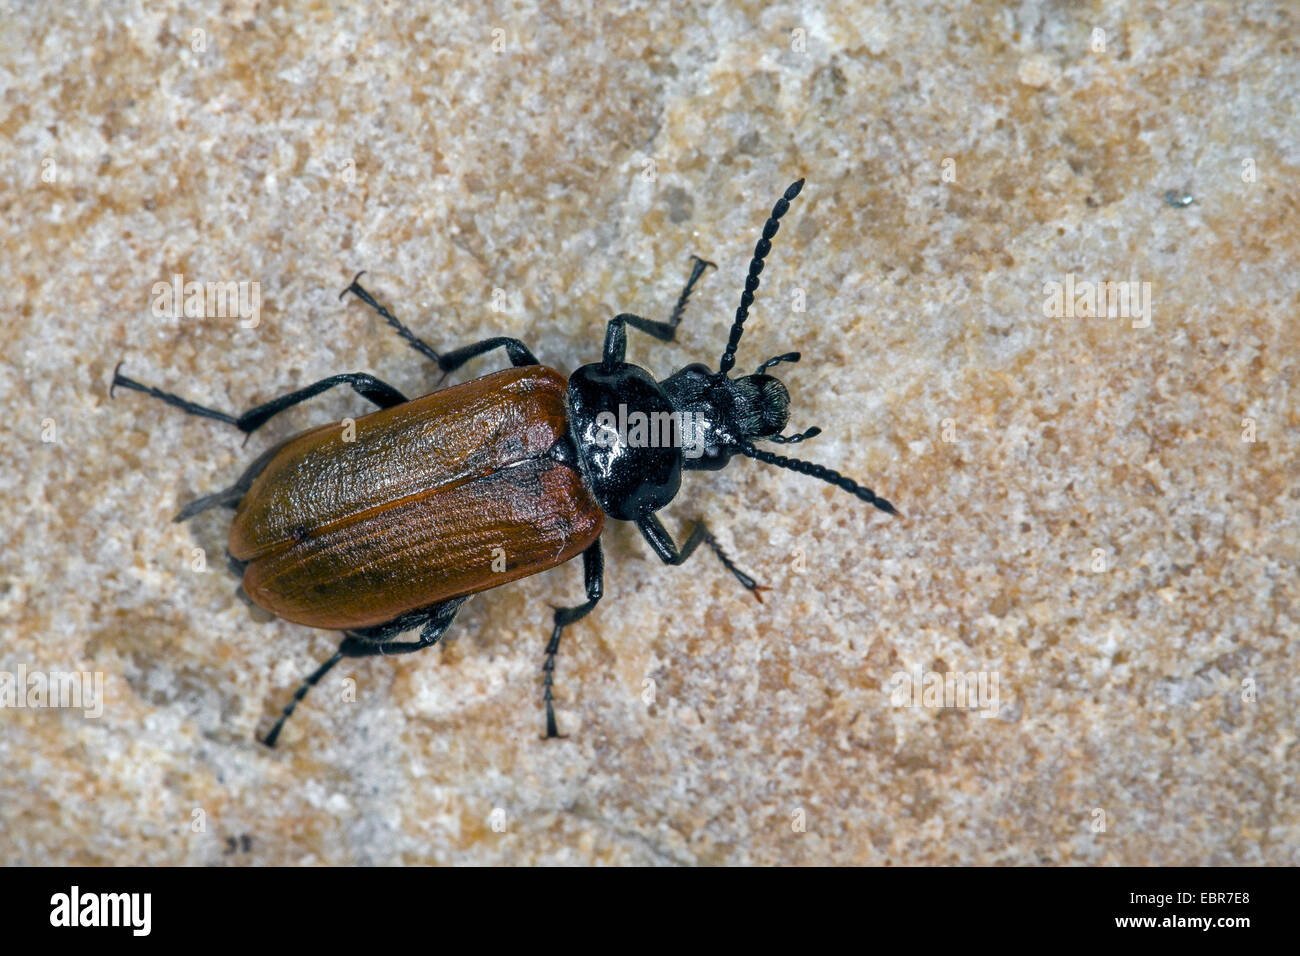 Garras de peine, peine de garras del escarabajo (Beetle Omophlus lepturoides, Odontomophlus lepturoides), sobre una piedra, Alemania Foto de stock